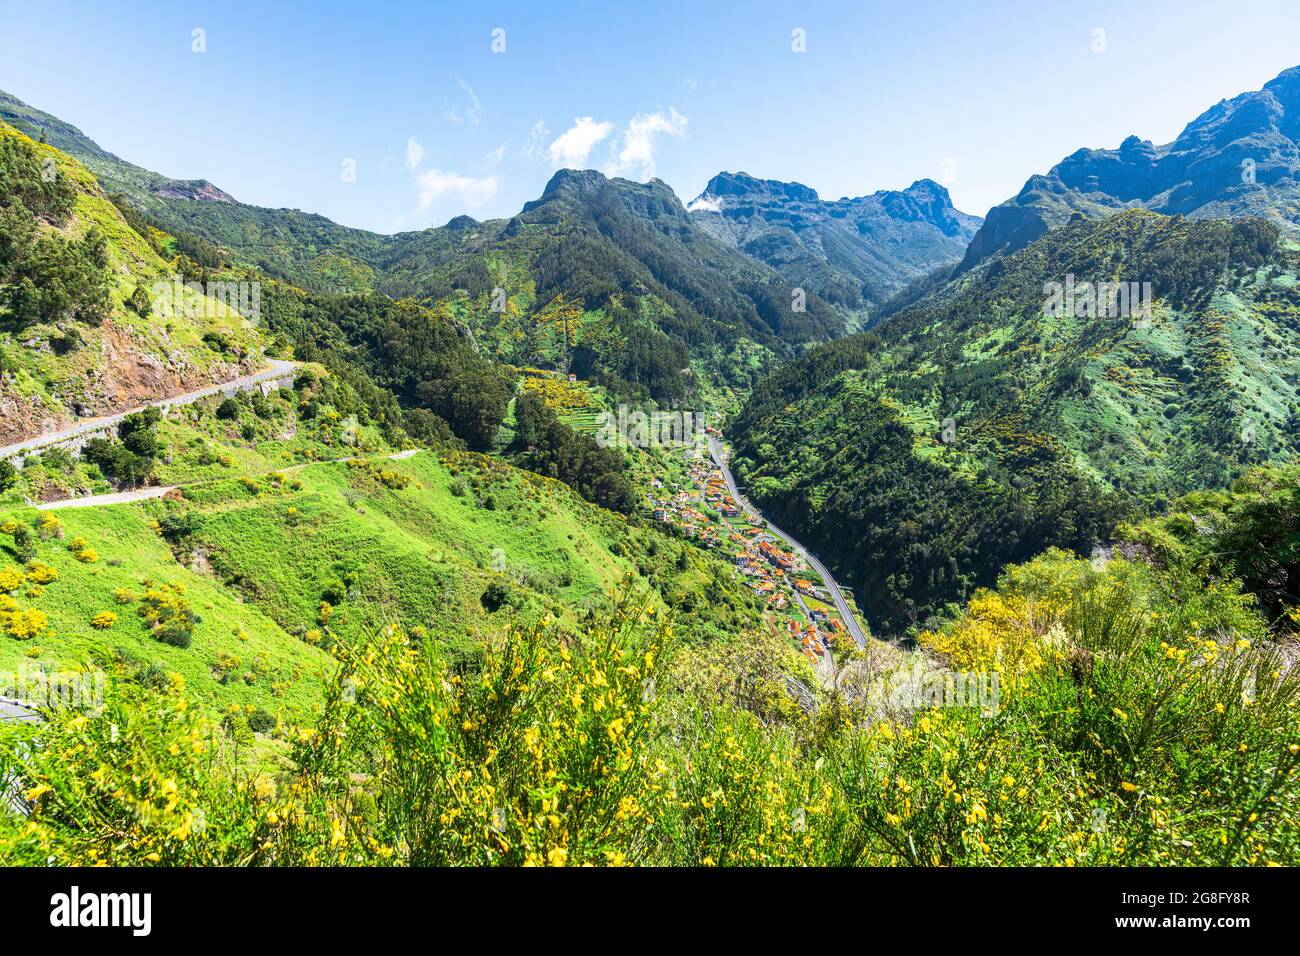 Vista ad alto angolo del villaggio di Serra de Agua nella valle verde, comune di Ribeira Brava, isola di Madeira, Portogallo, Atlantico, Europa Foto Stock